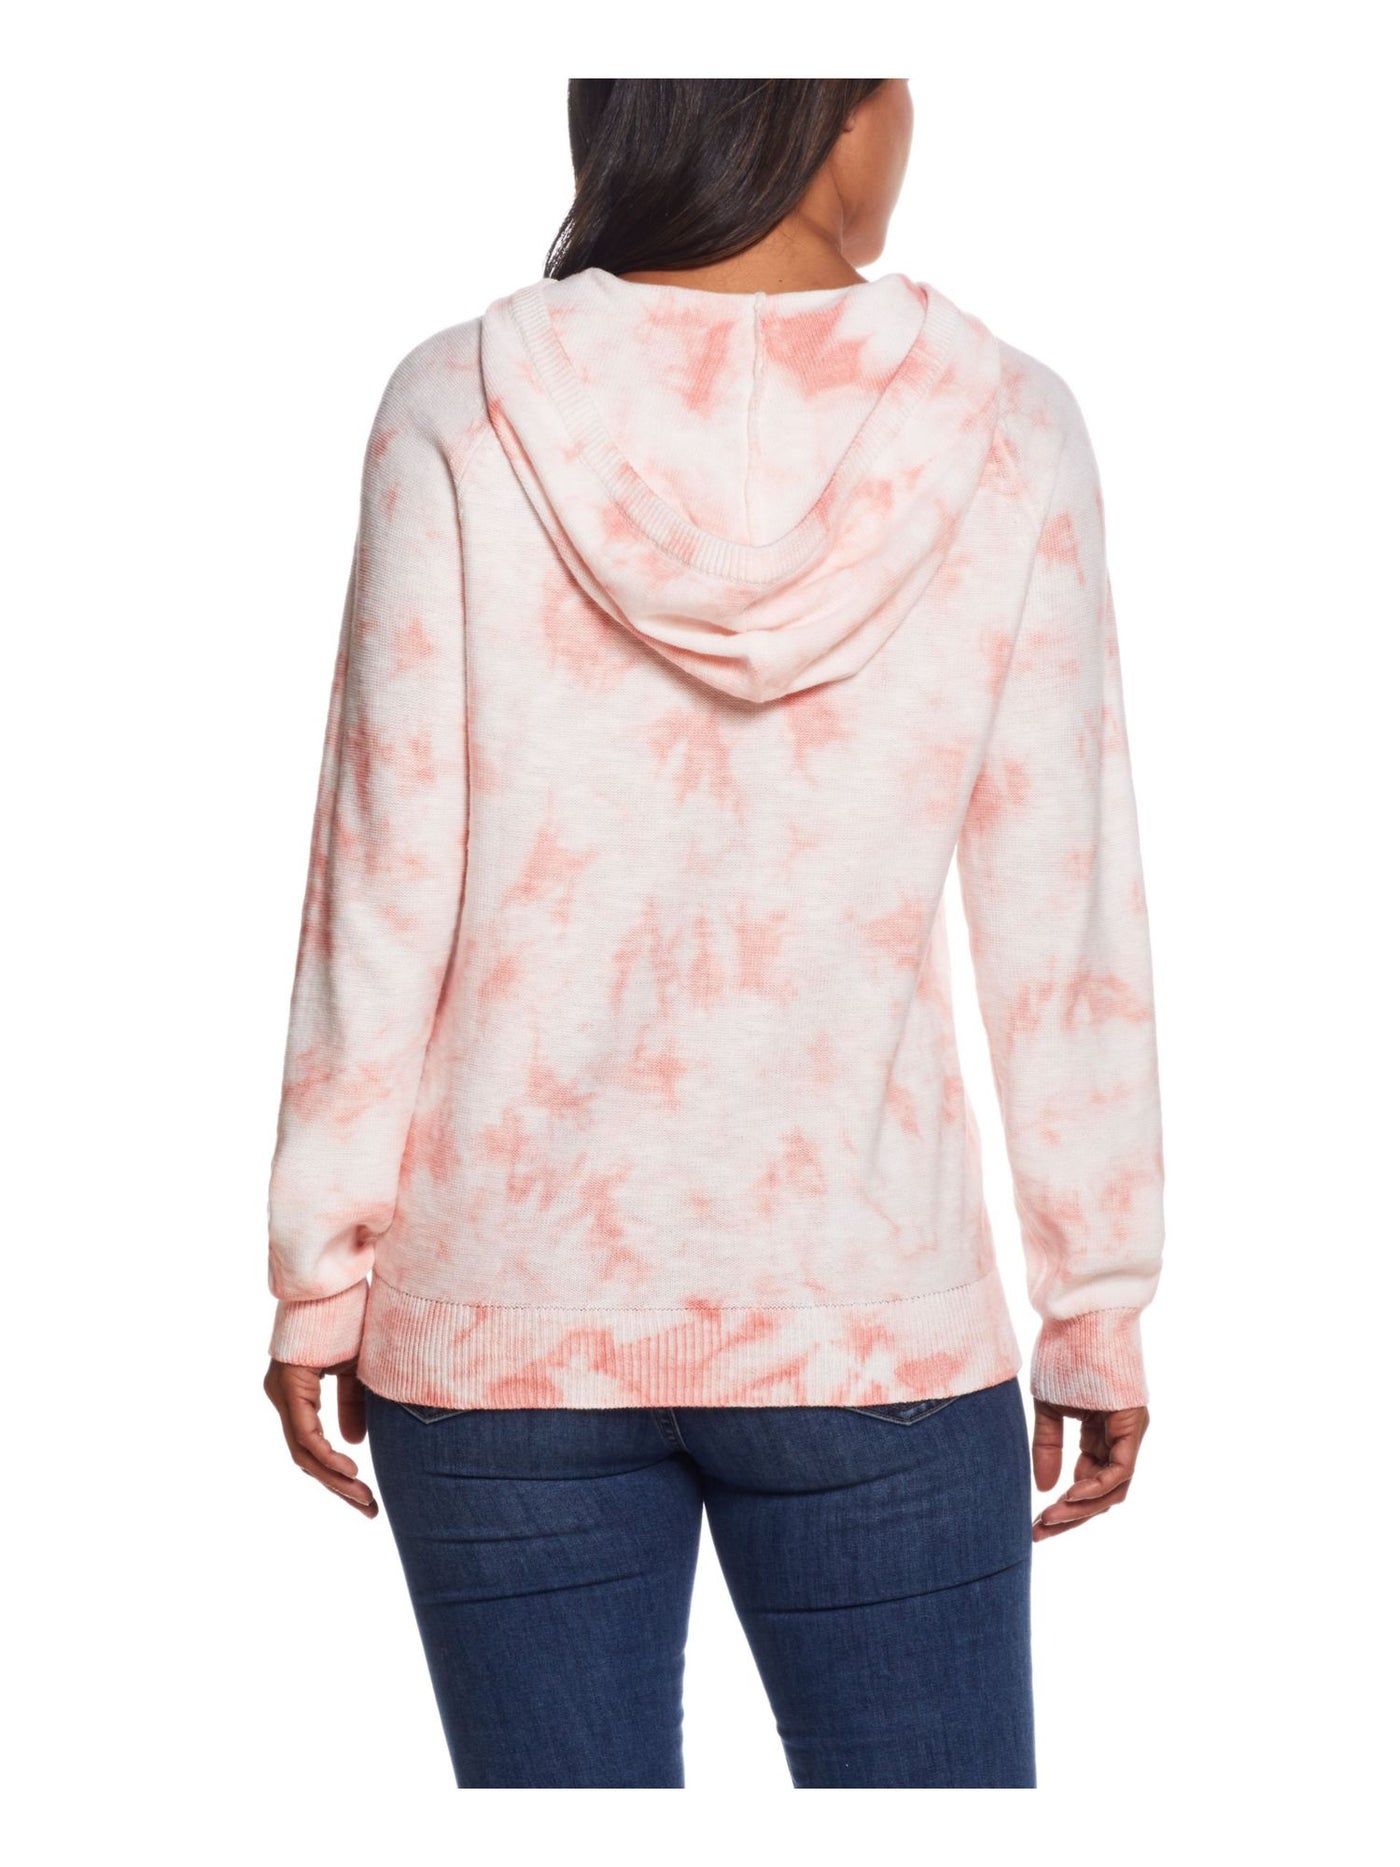 WEATHERPROOF VINTAGE Womens Coral Tie Dye Long Sleeve Hoodie Sweater M